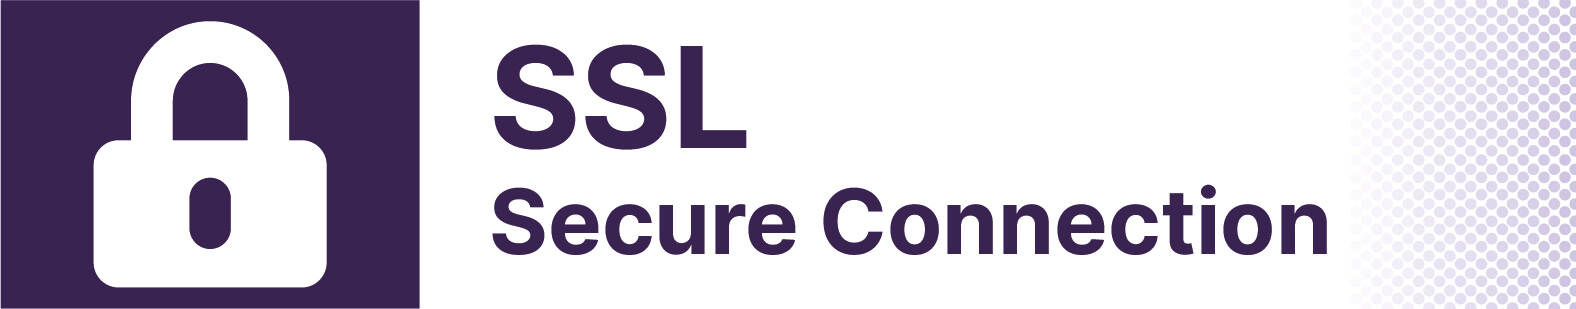 SSL Secure Connection.